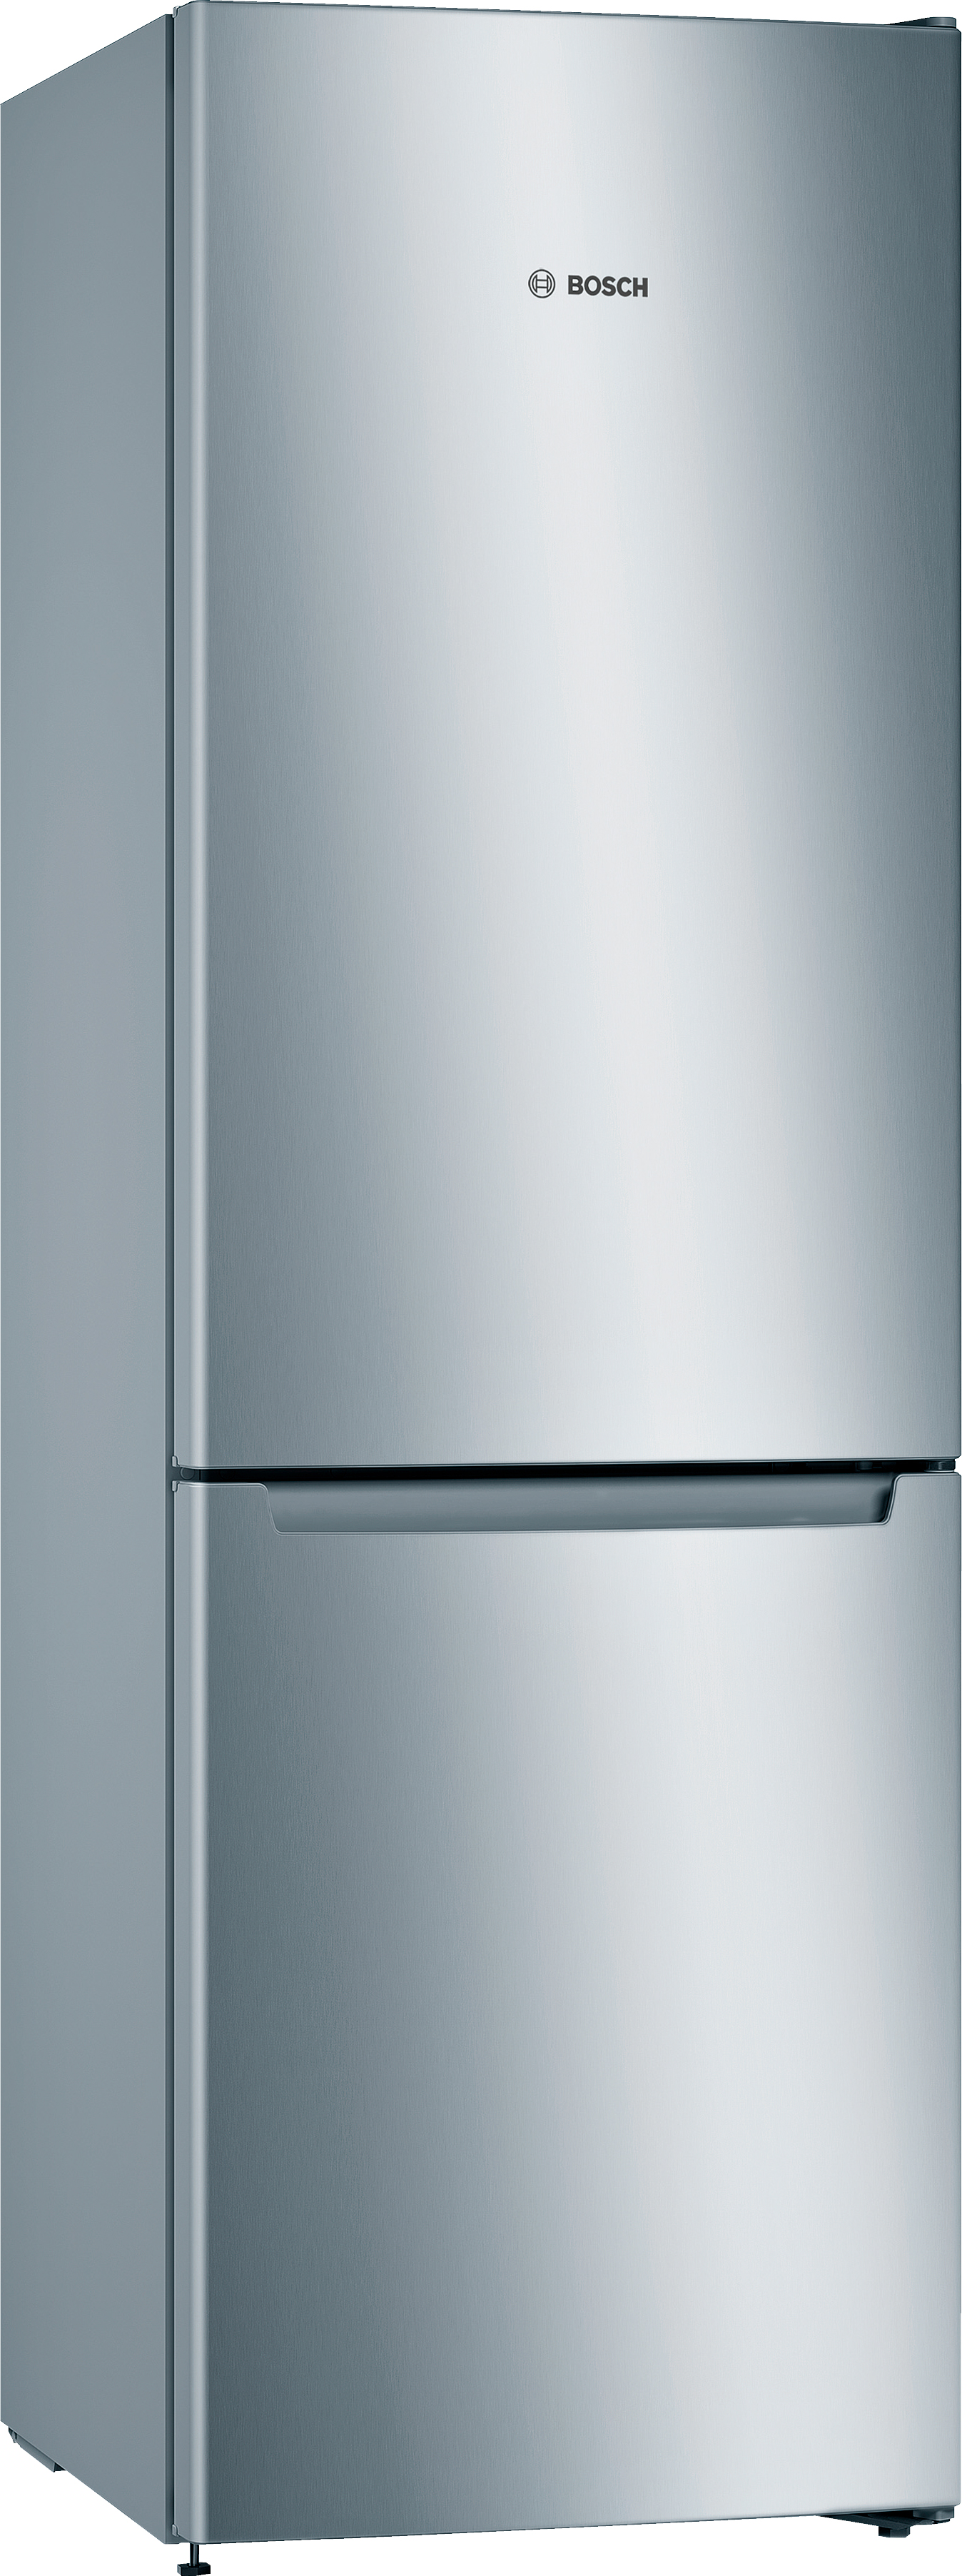 Отзывы холодильник Bosch KGN33NL206